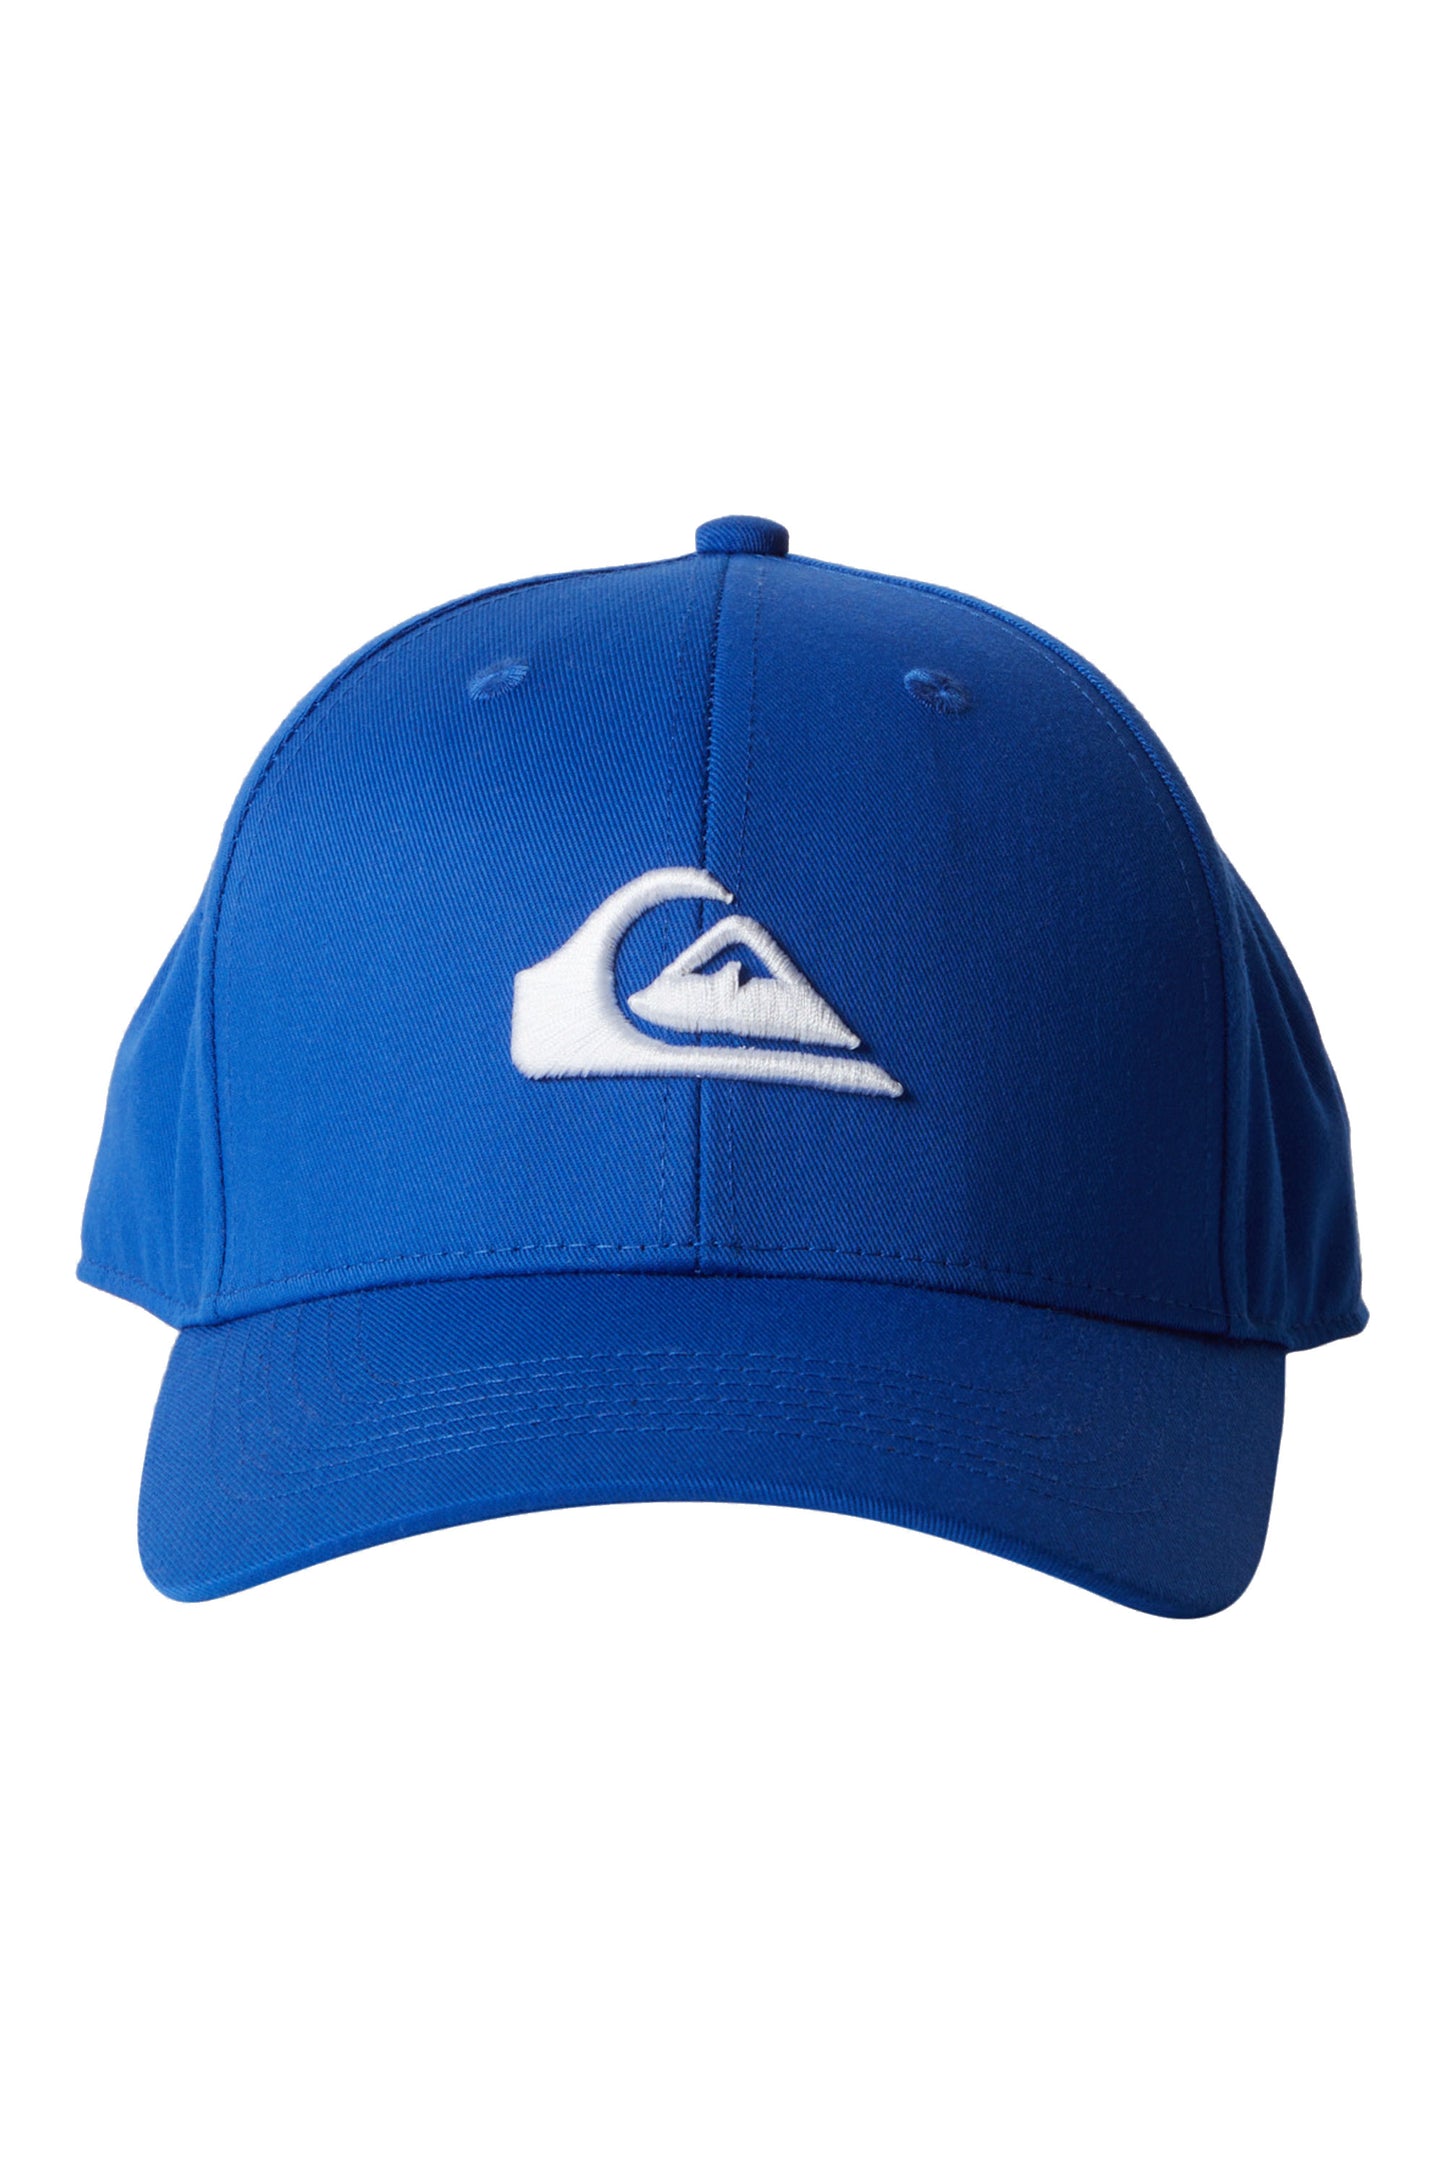 
                  
                    PUKAS-SURF-SHOP-CAP-QUIKSILVER-DECADES-BLUE
                  
                